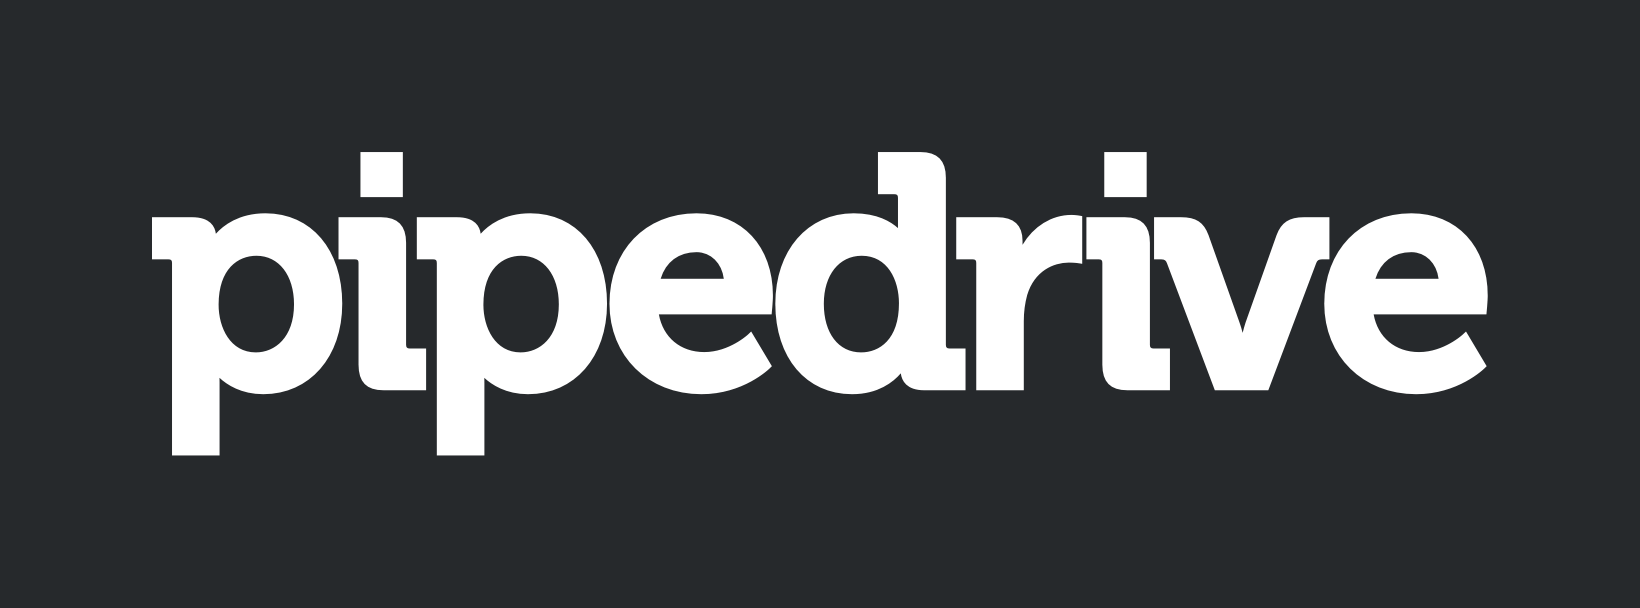 Logo do Pipedrive com letras brancas e fundo preto